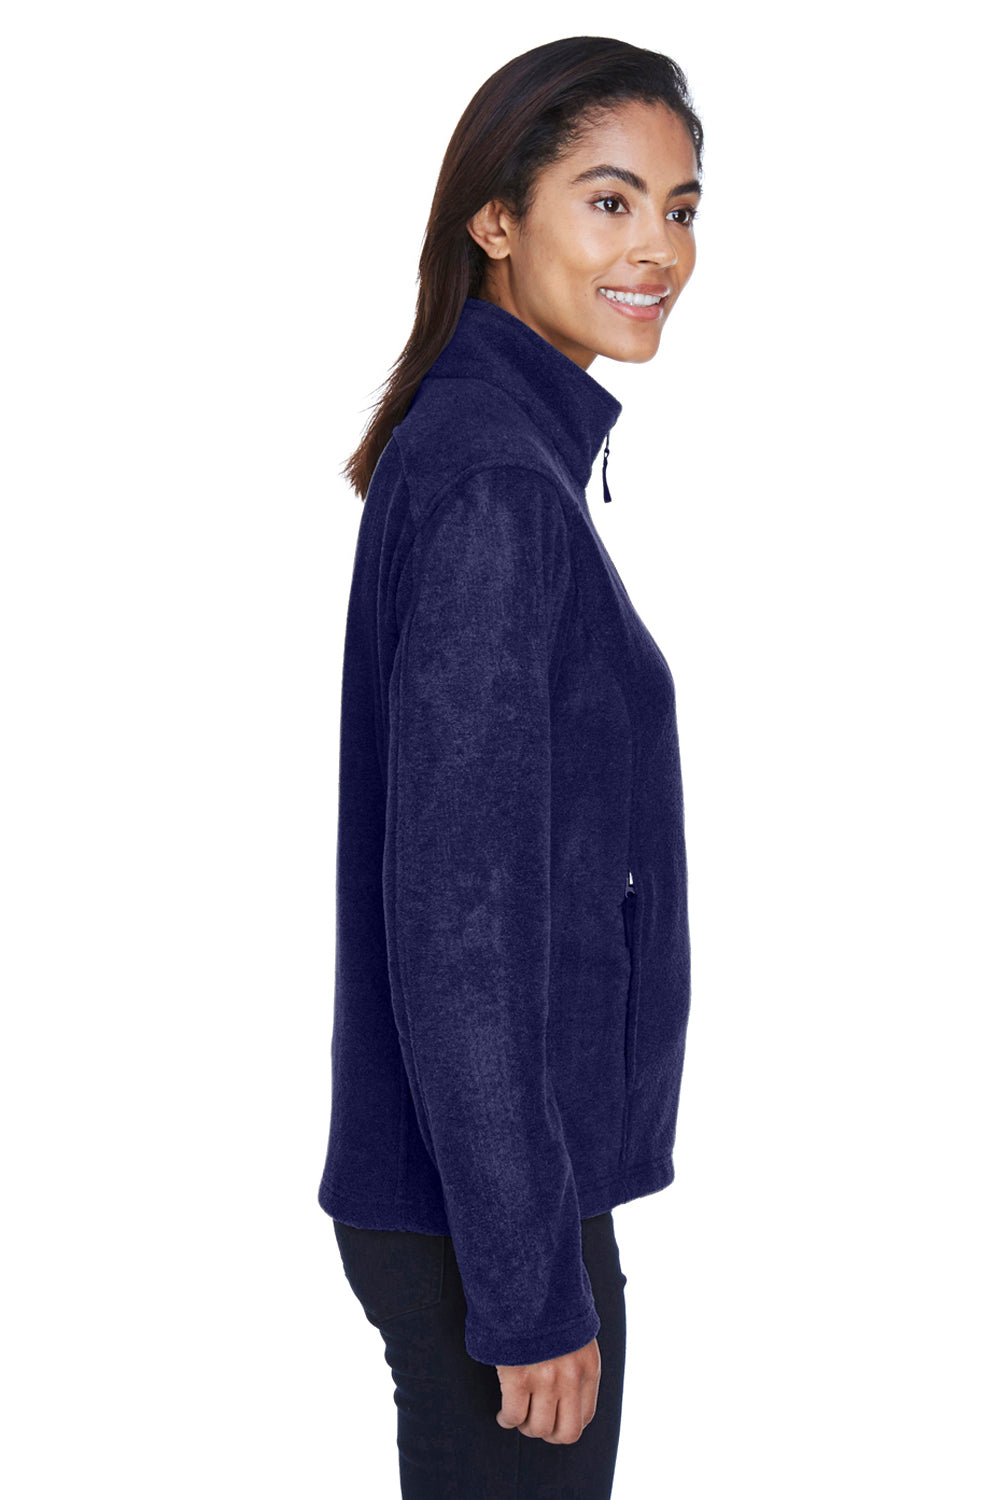 Core 365 78190 Womens Journey Full Zip Fleece Jacket Navy Blue Side